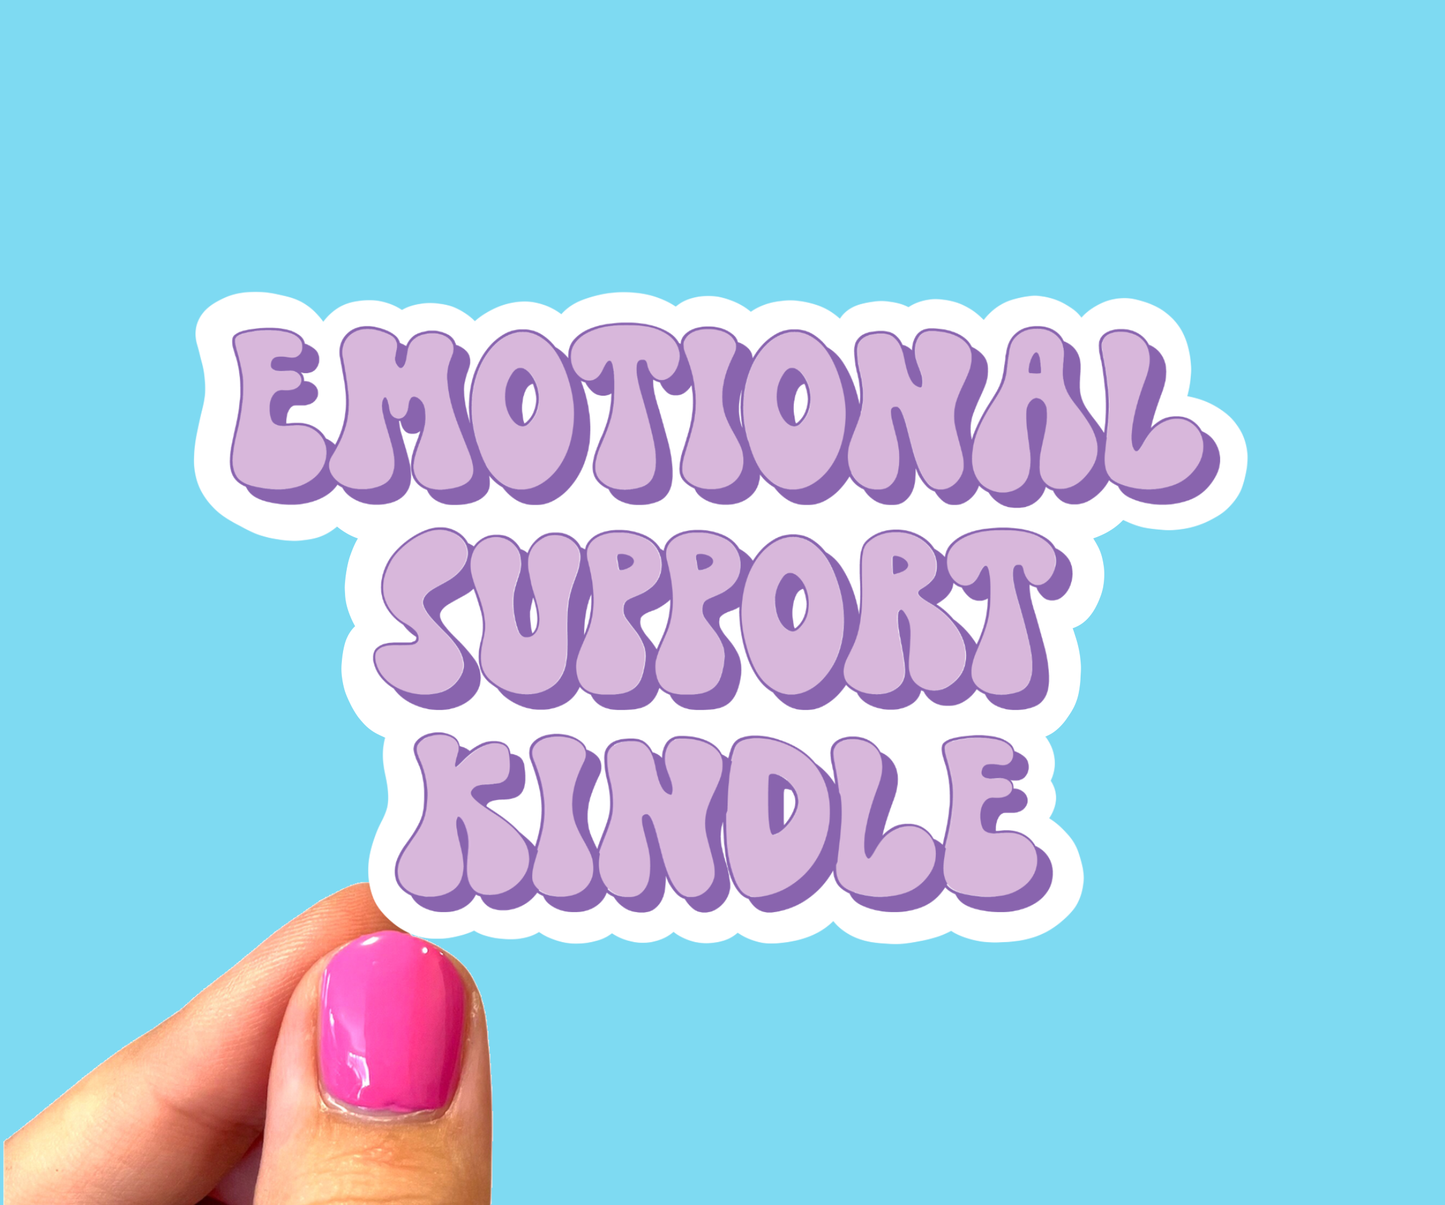 Sticker-Kindle-01: Emotional Support Kindle